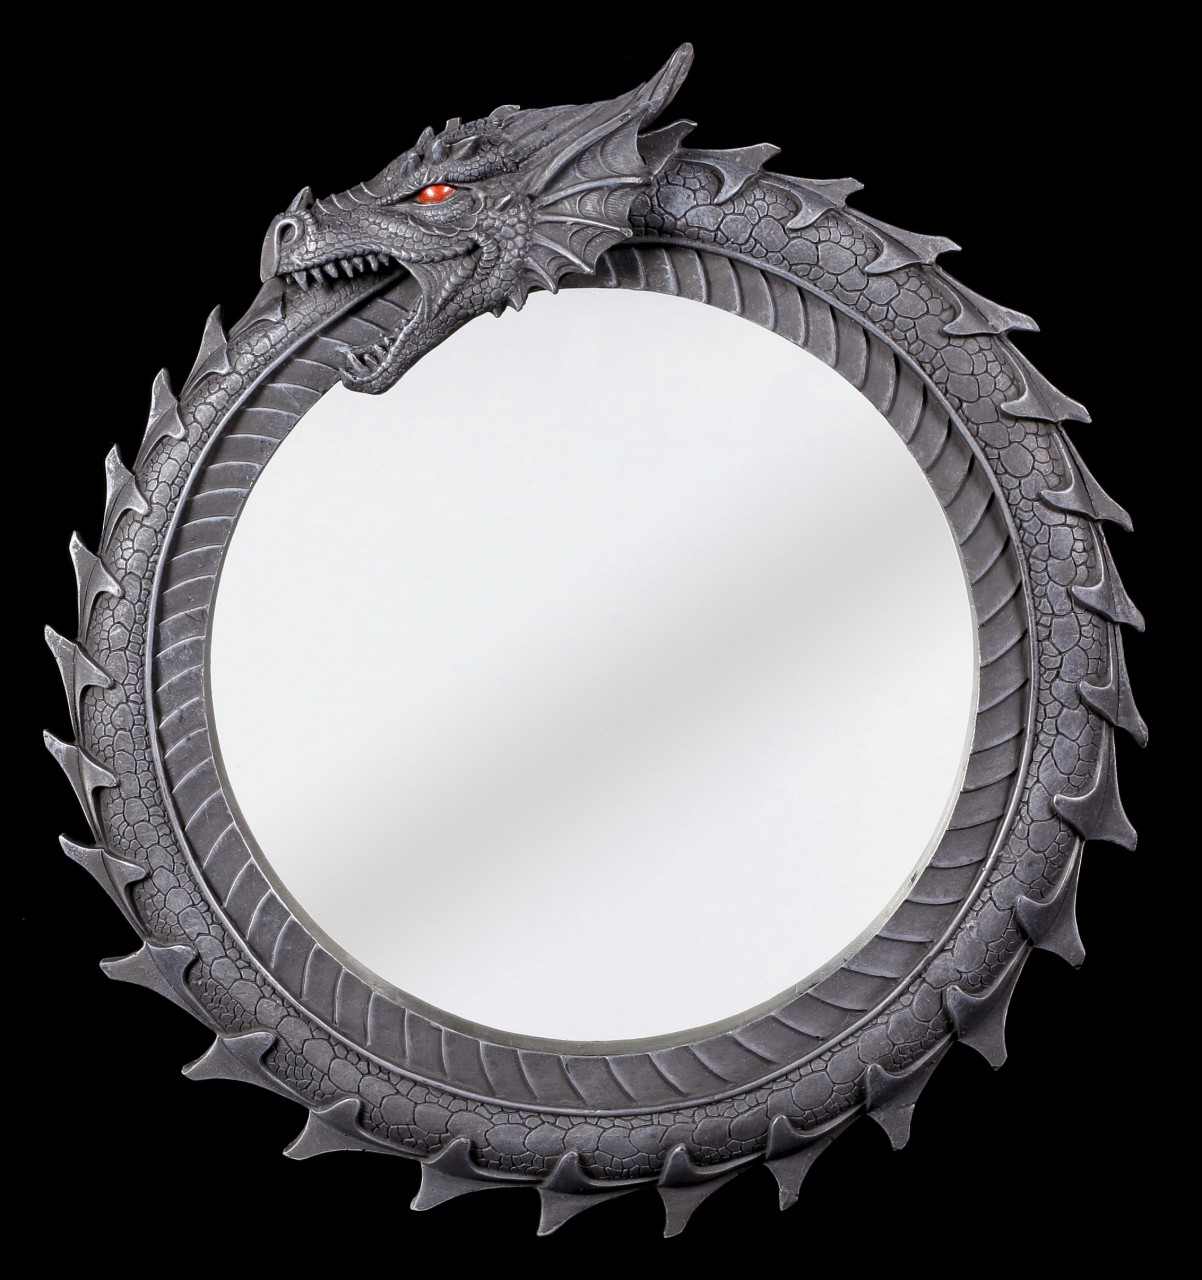 Dragon Wall Mirror - Ouroboros Midgard Serpent 